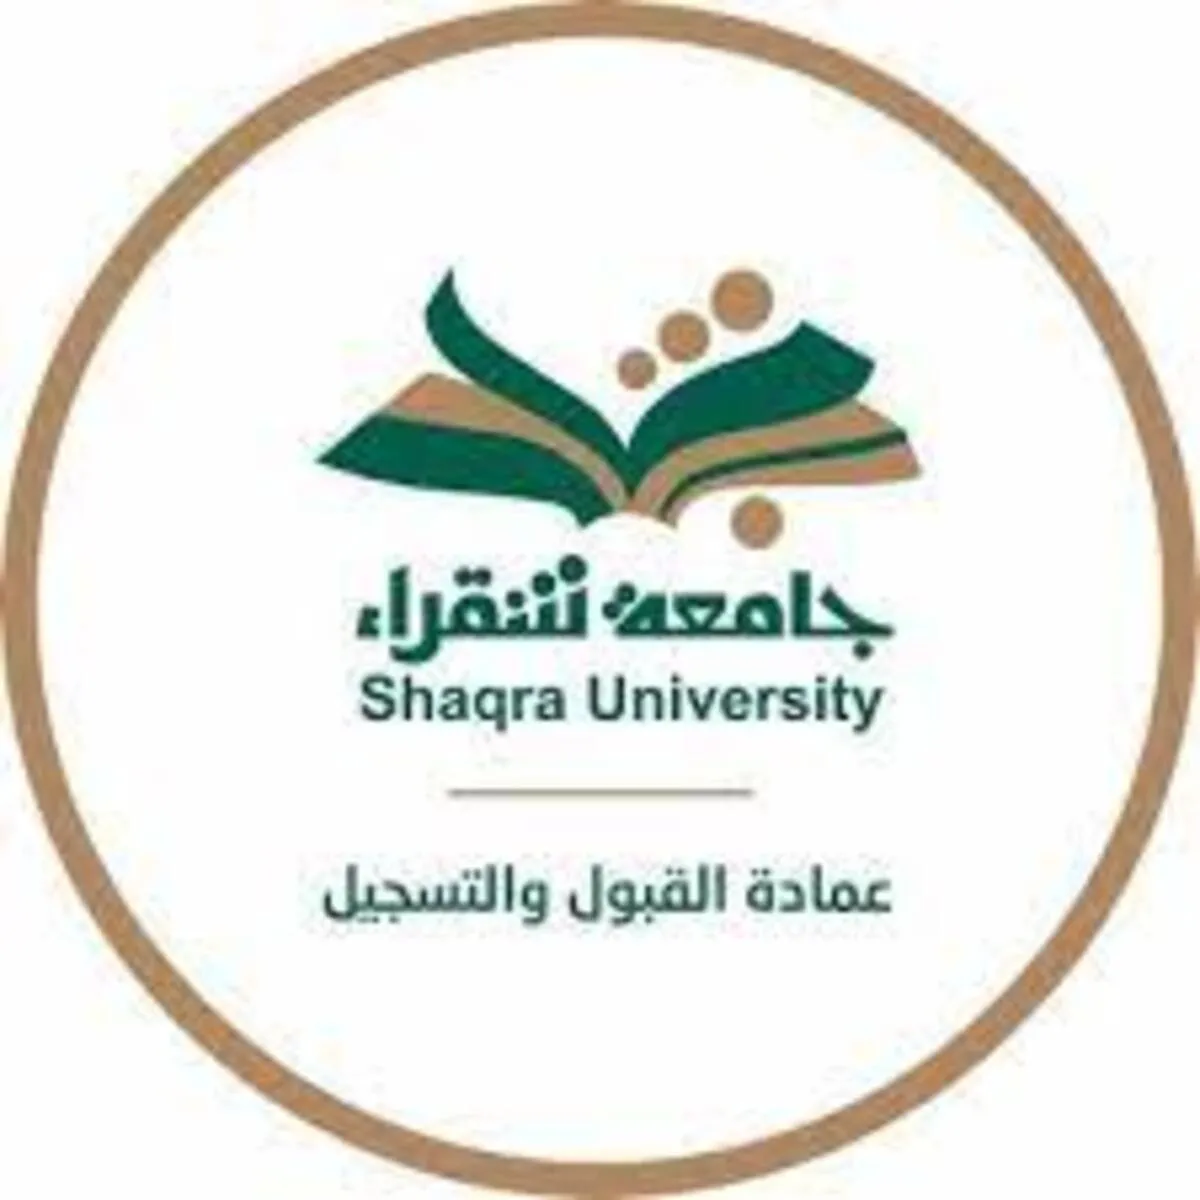 مكأفاة الطلاب جامعة شقراء 1.webp - مدونة التقنية العربية